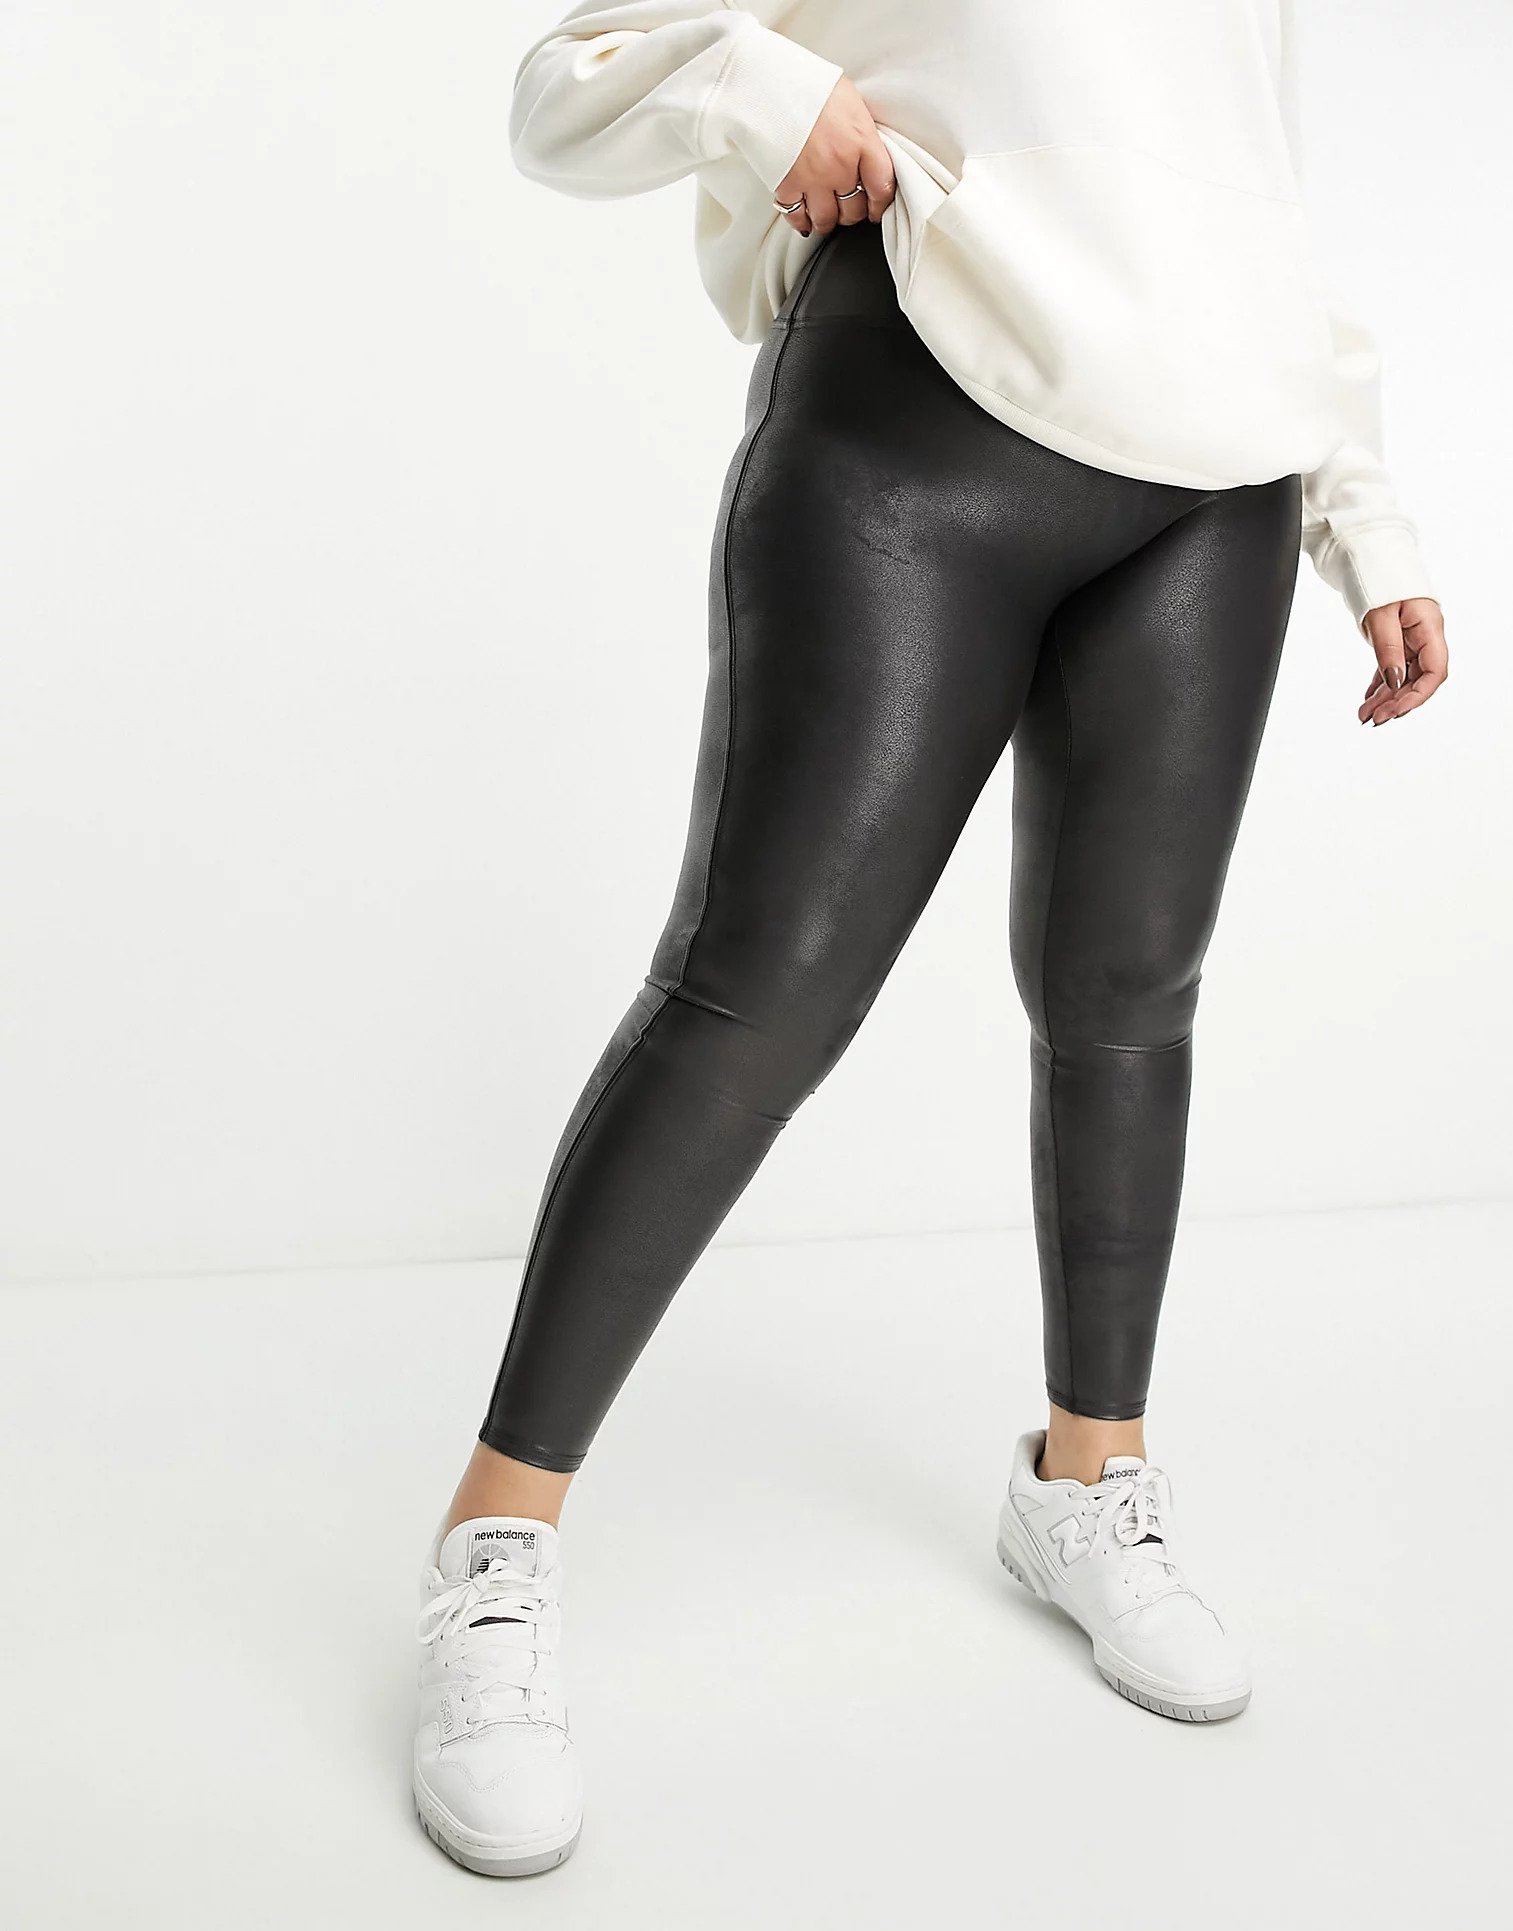 Plus Size Leggings  Best Cheap Women's Black, Printed, Capri Leggings -  Rosegal